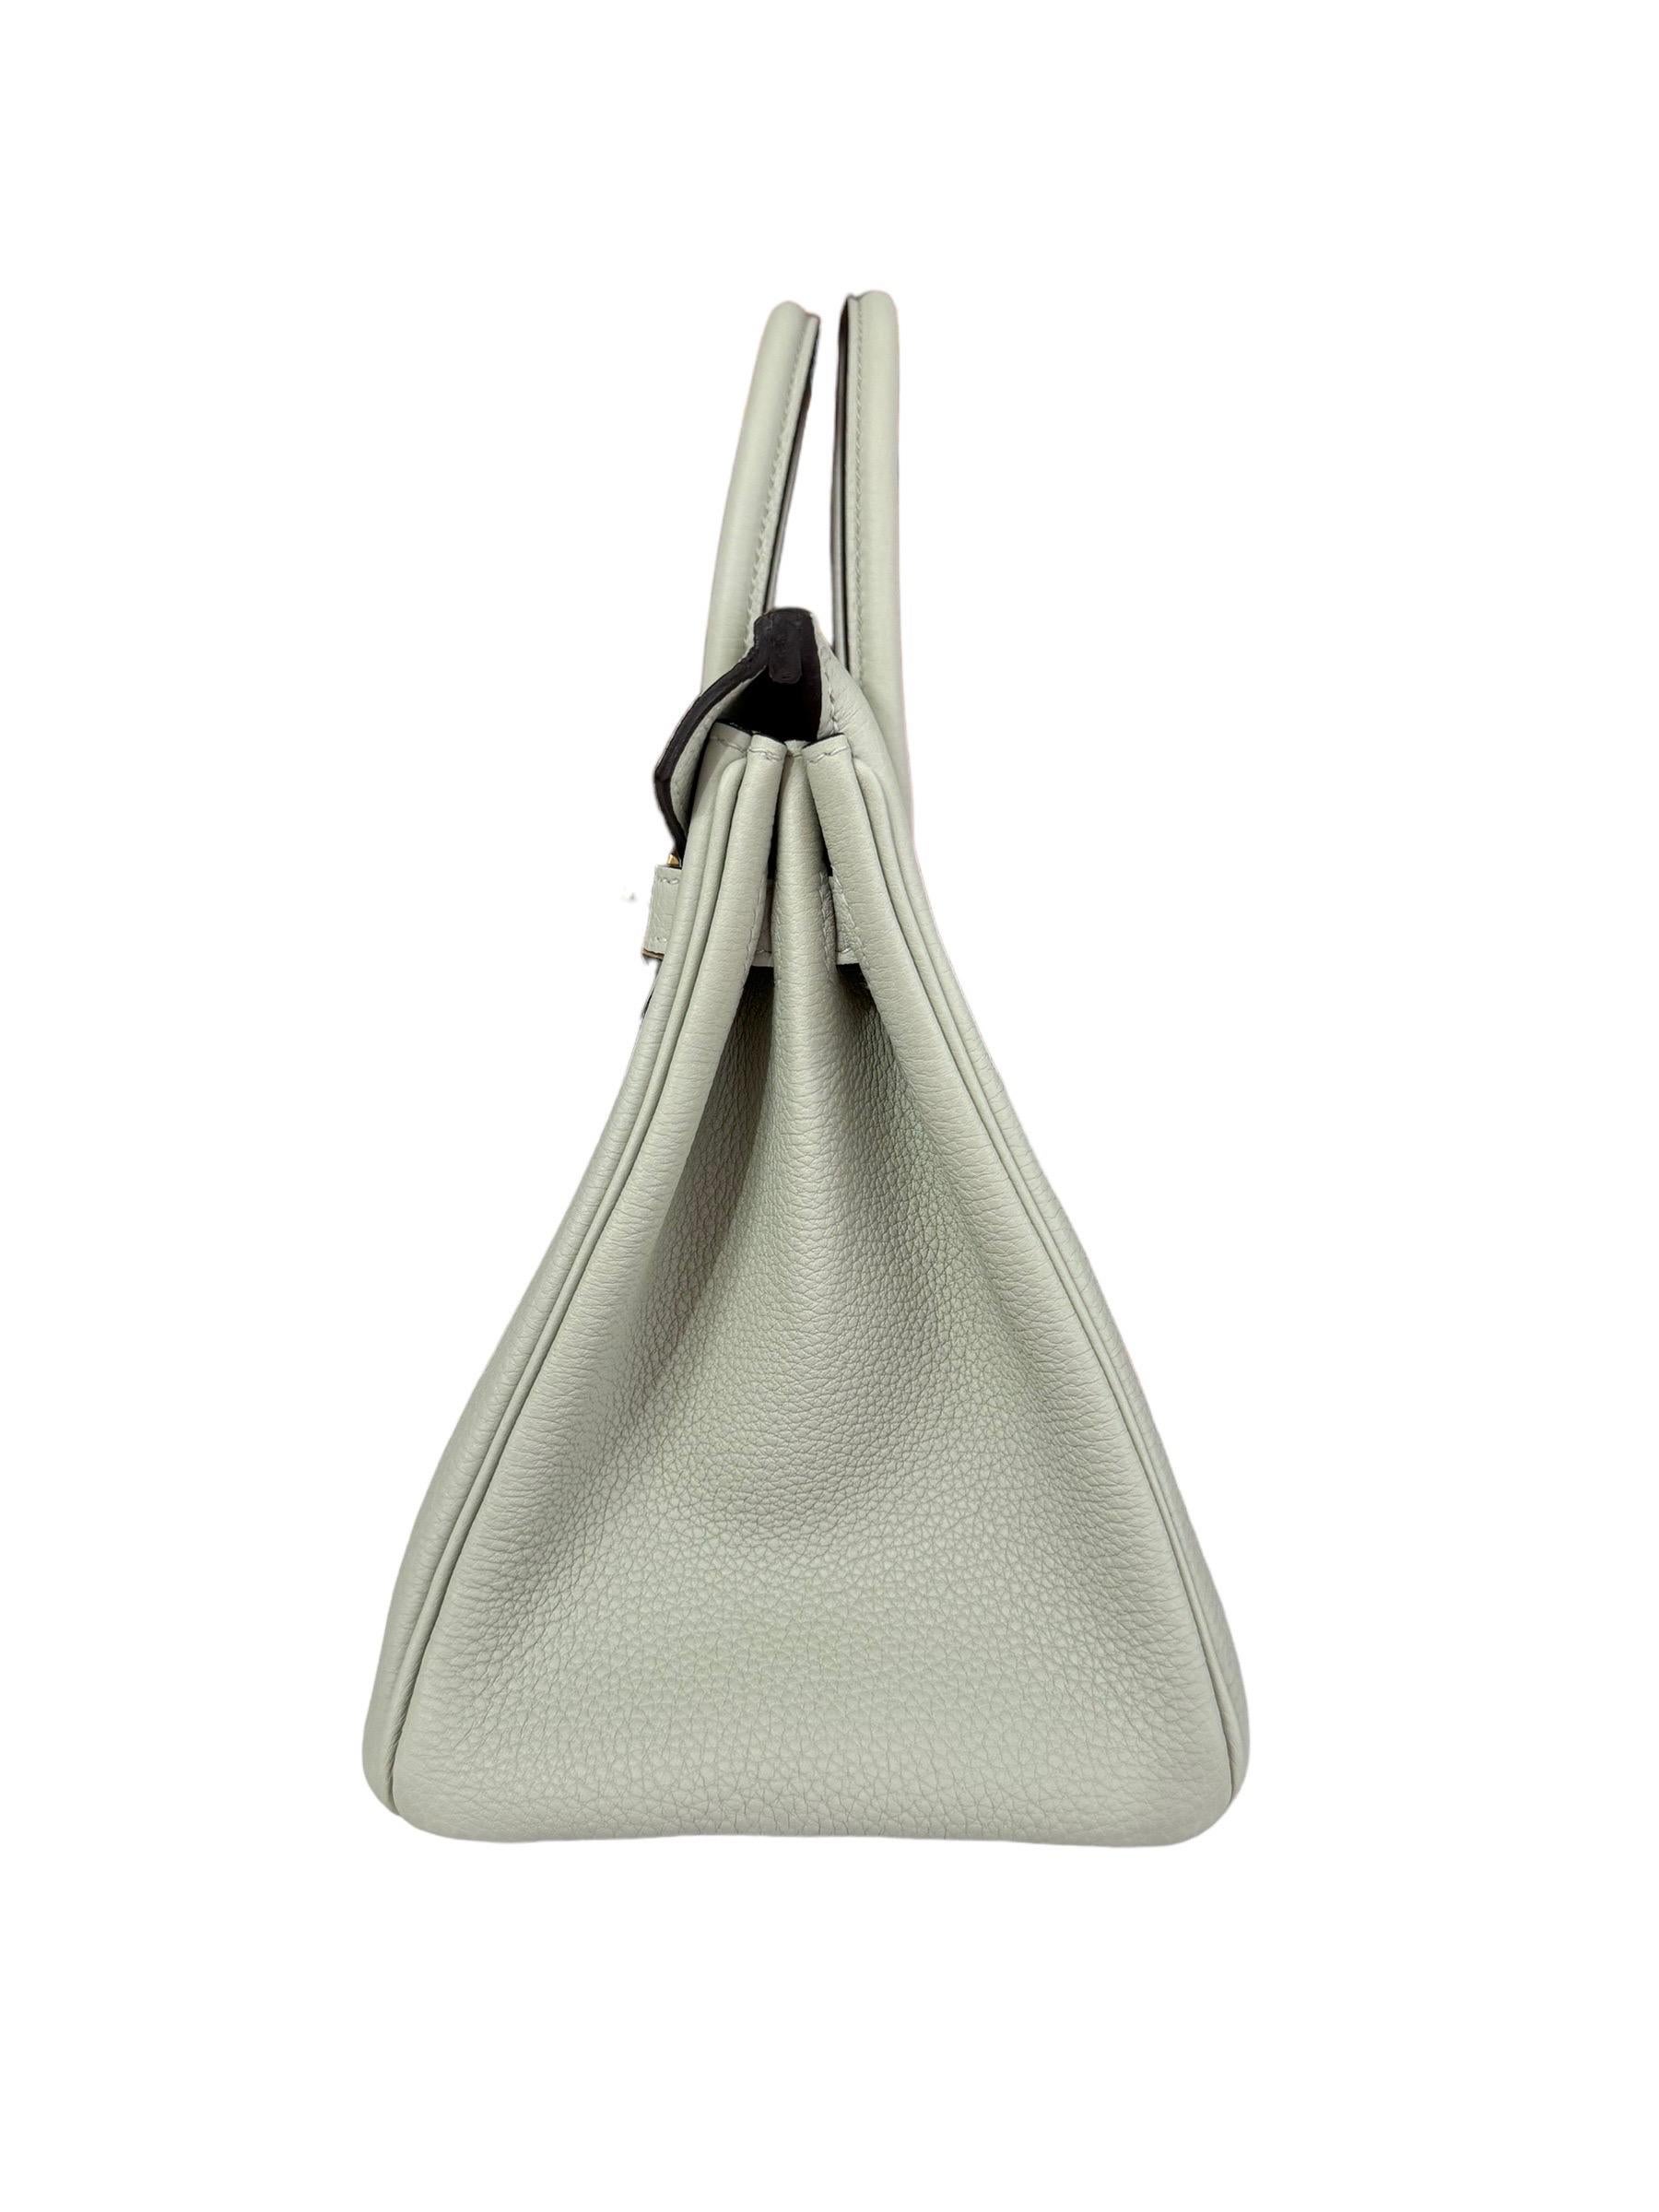 Hermes Birkin 25 Gris Neve Gray Togo Leather Handbag Gold Hardware NEW 2023 For Sale 1